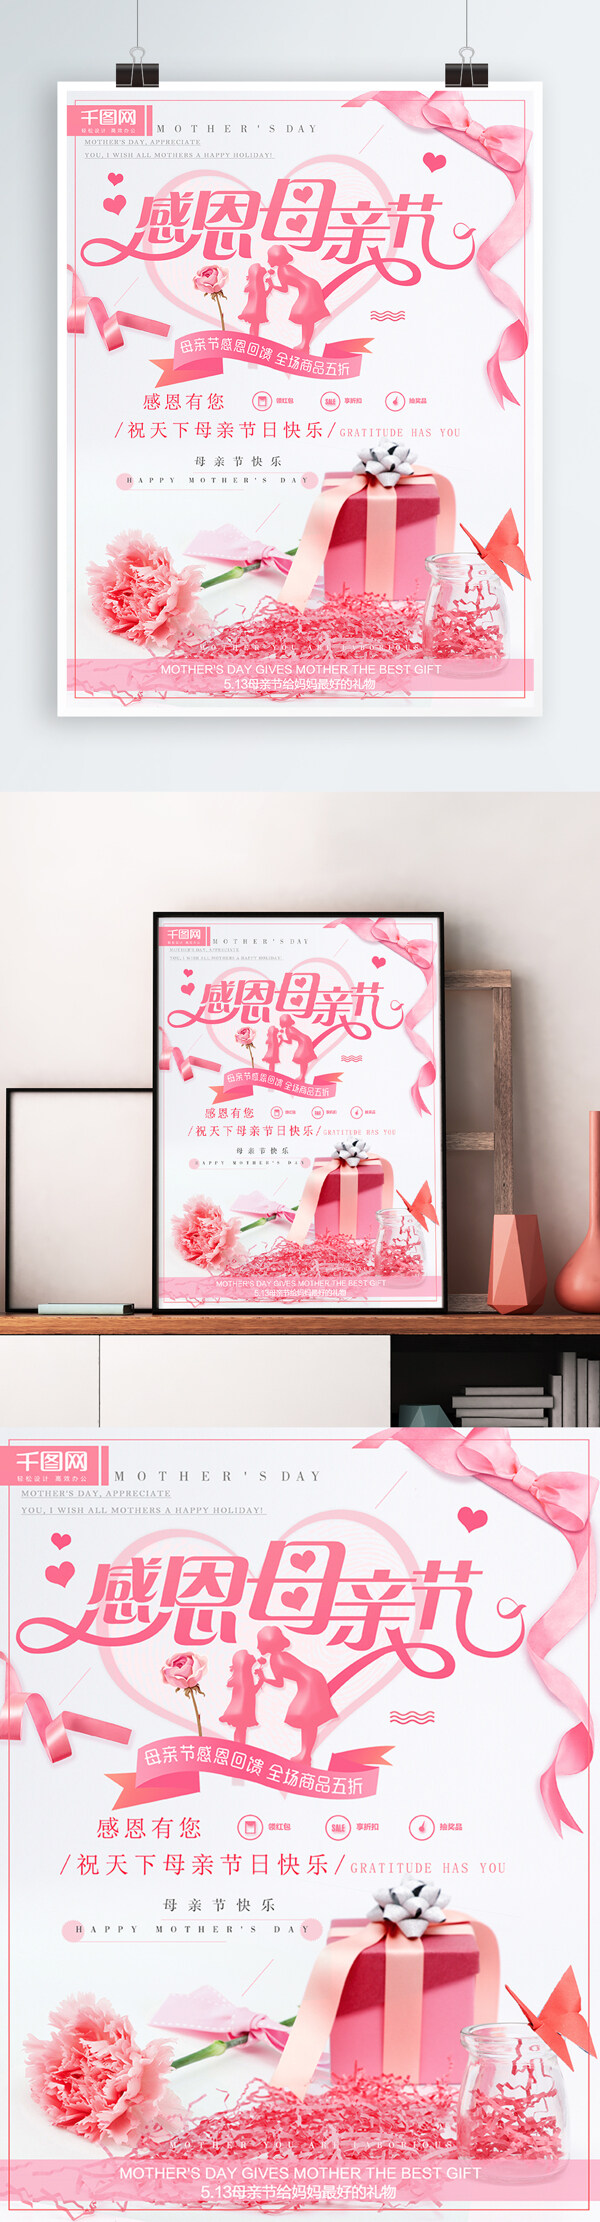 感恩母亲节粉色康乃馨清新浪漫节日促销海报